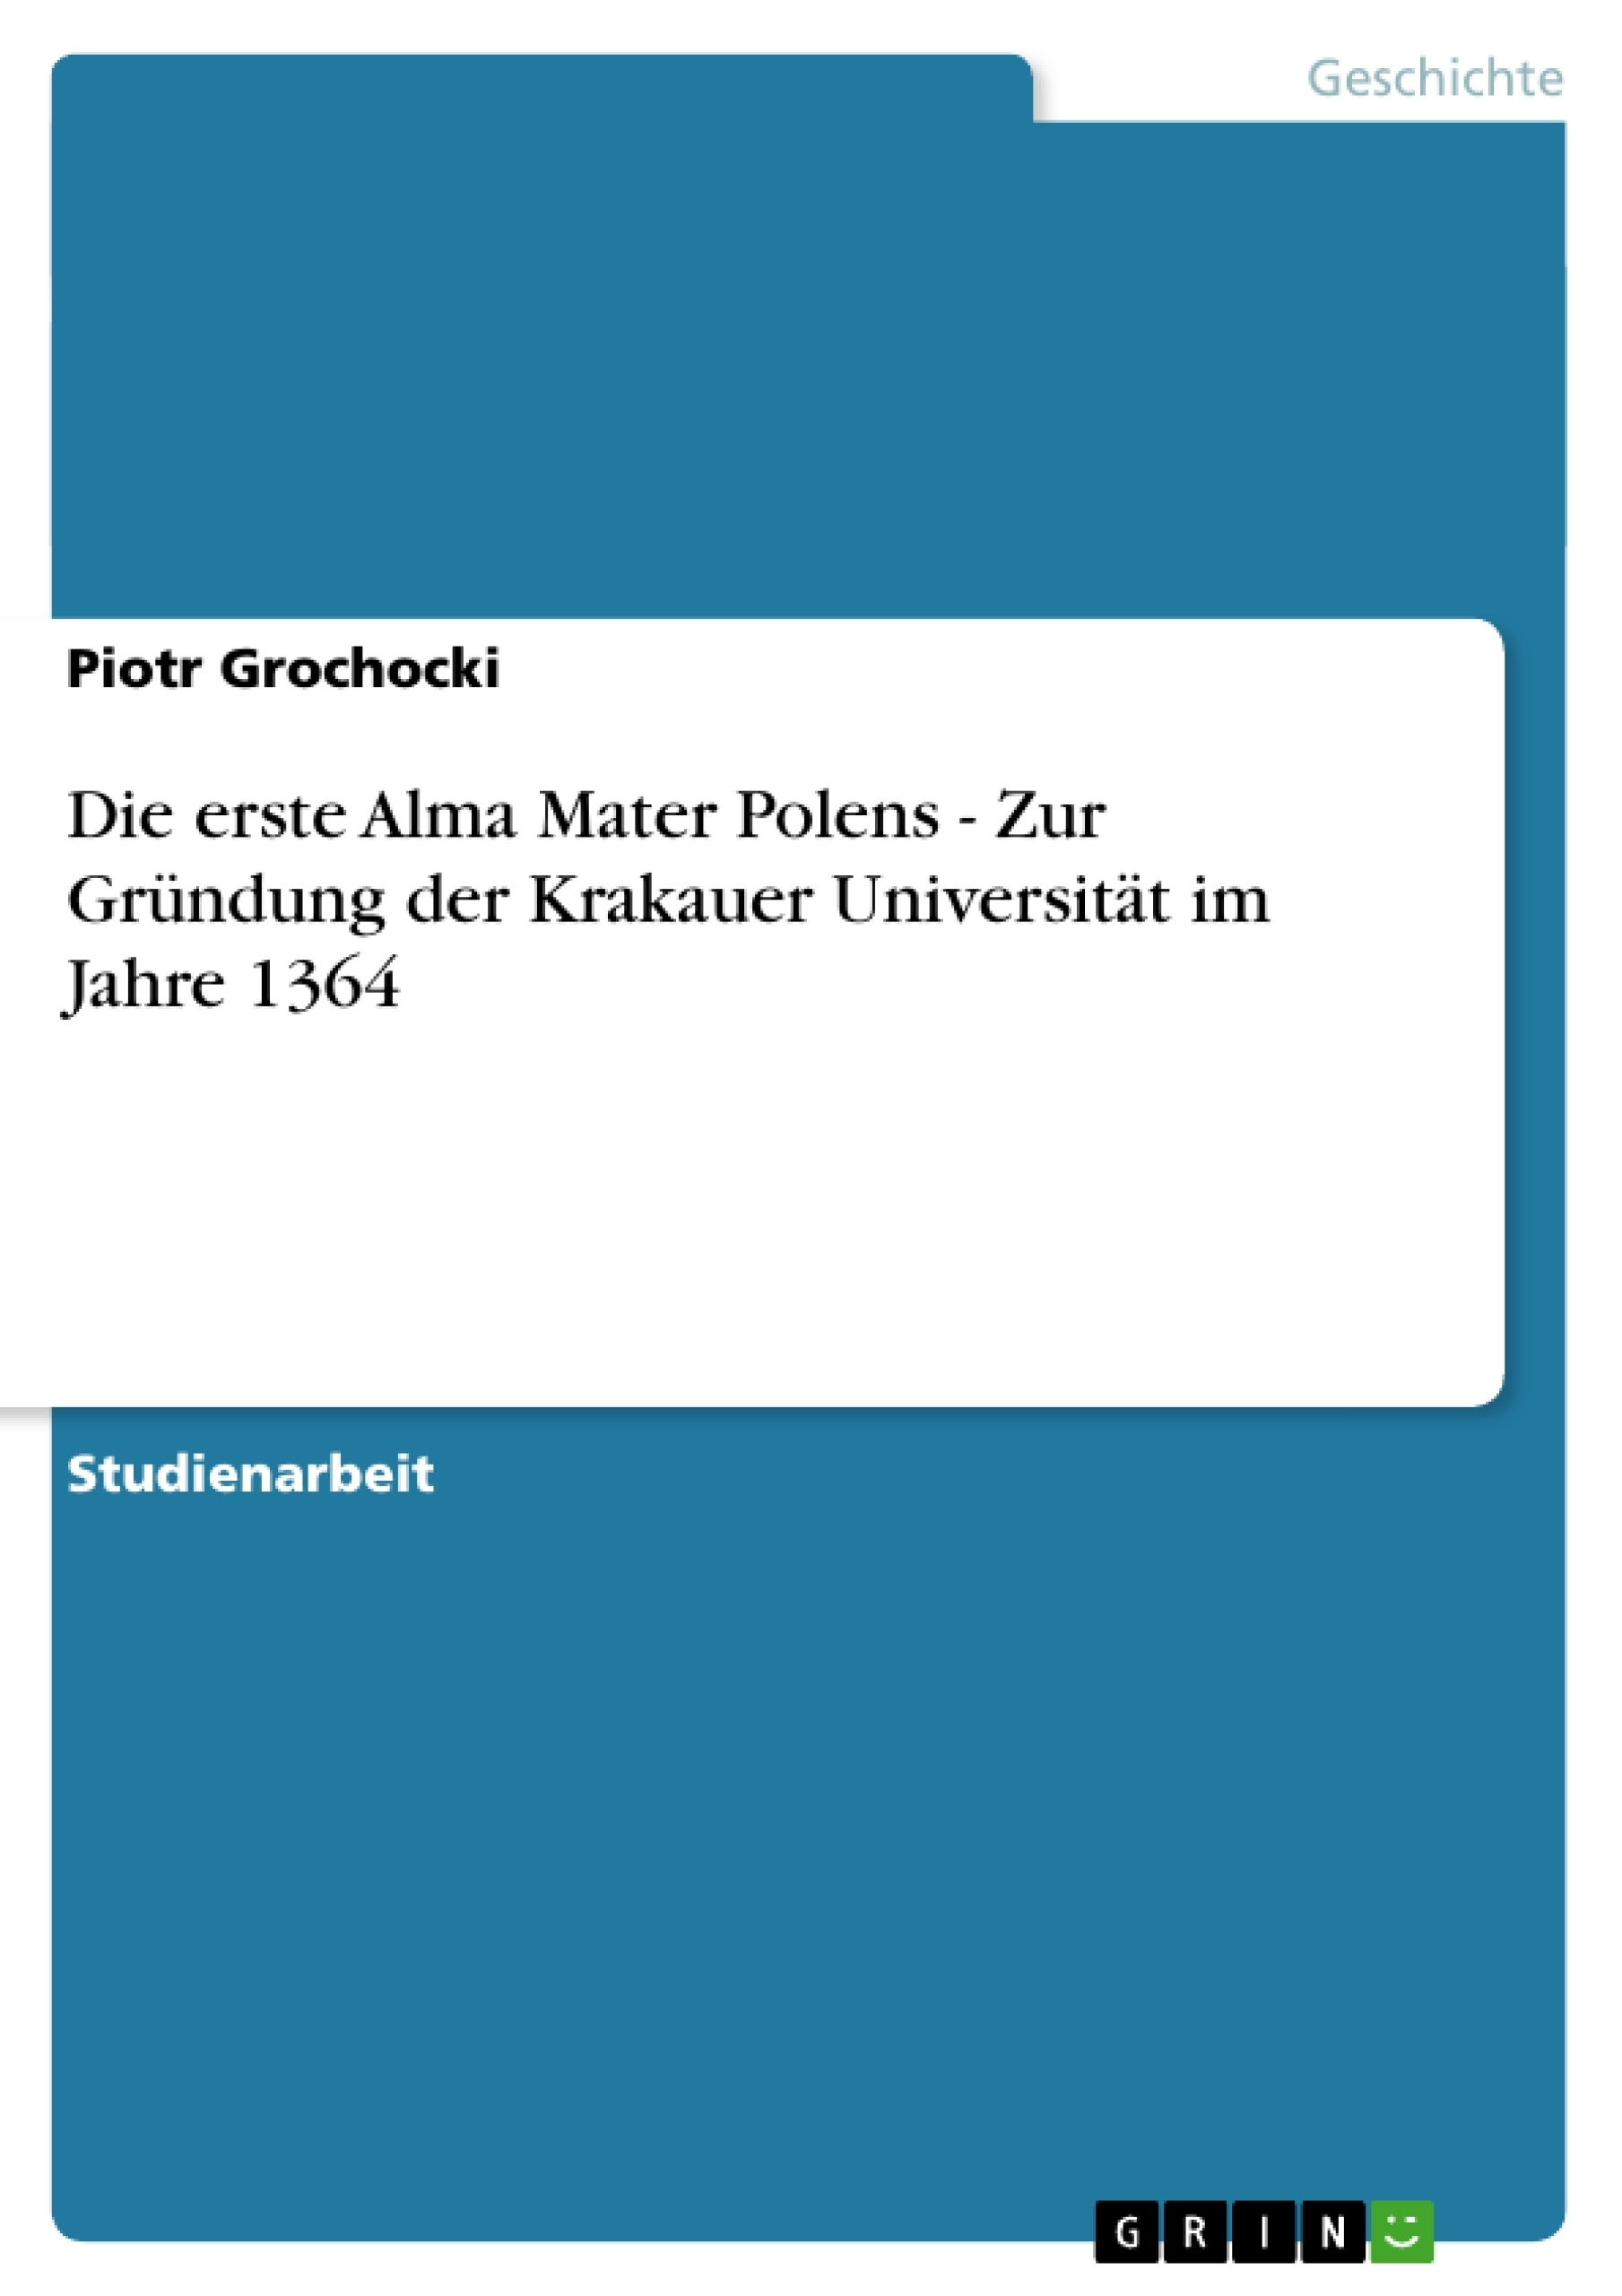 Title: Die erste Alma Mater Polens - Zur Gründung der Krakauer Universität im Jahre 1364